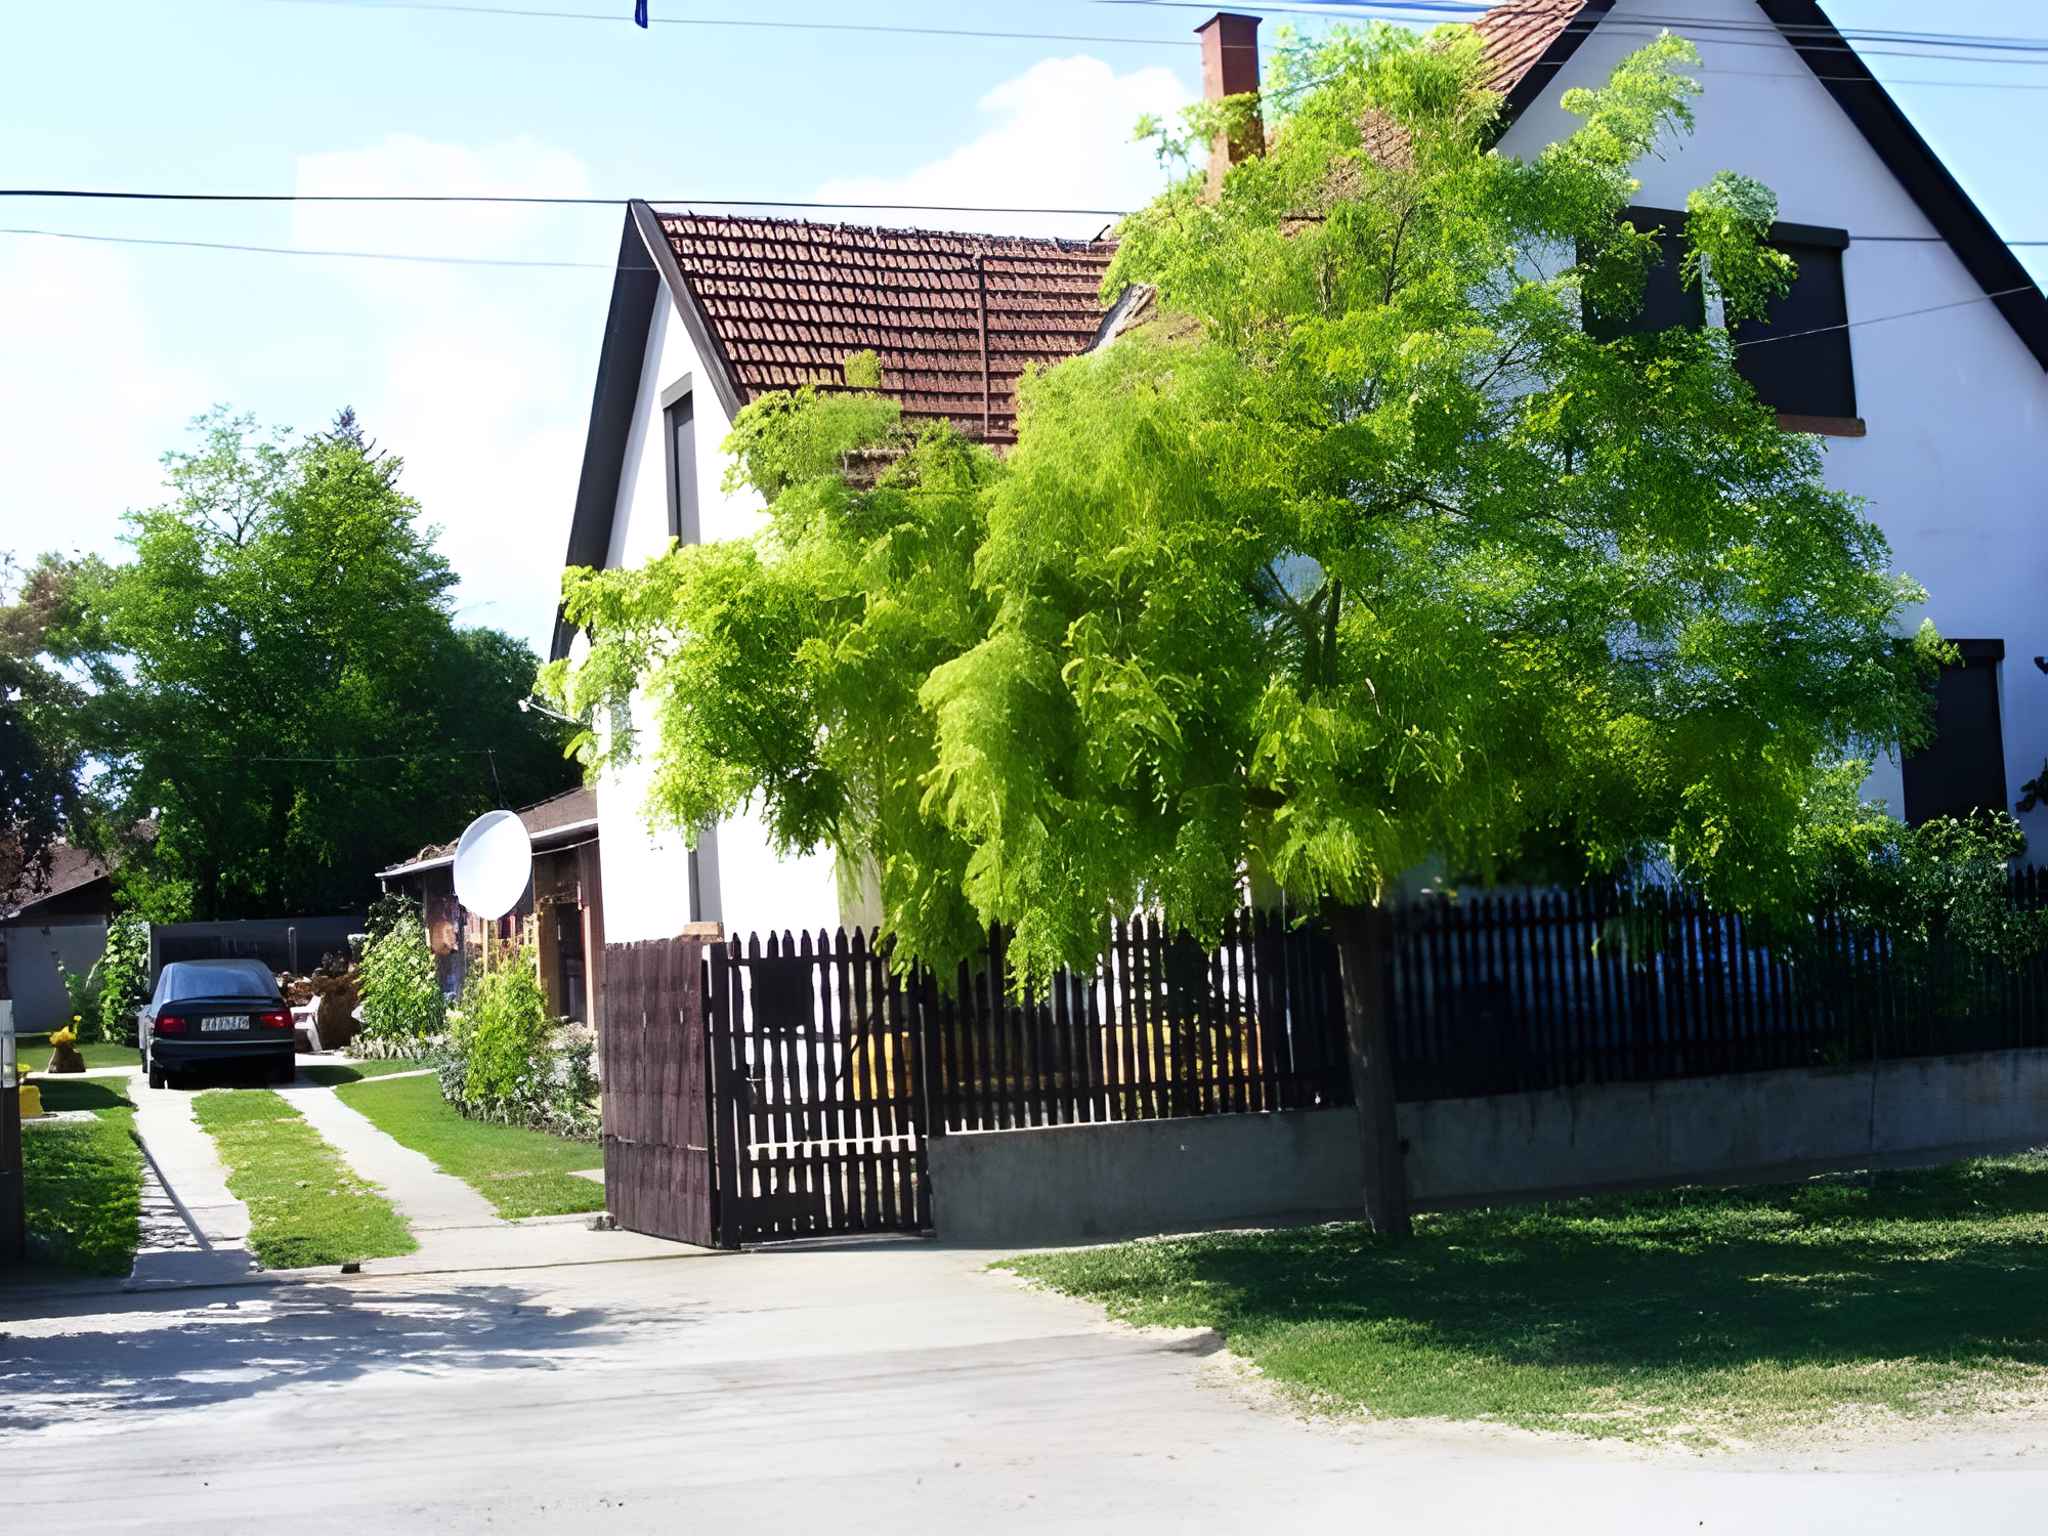 Ferienhaus mit Garten, Grill und Pavillon Ferienhaus in Ungarn